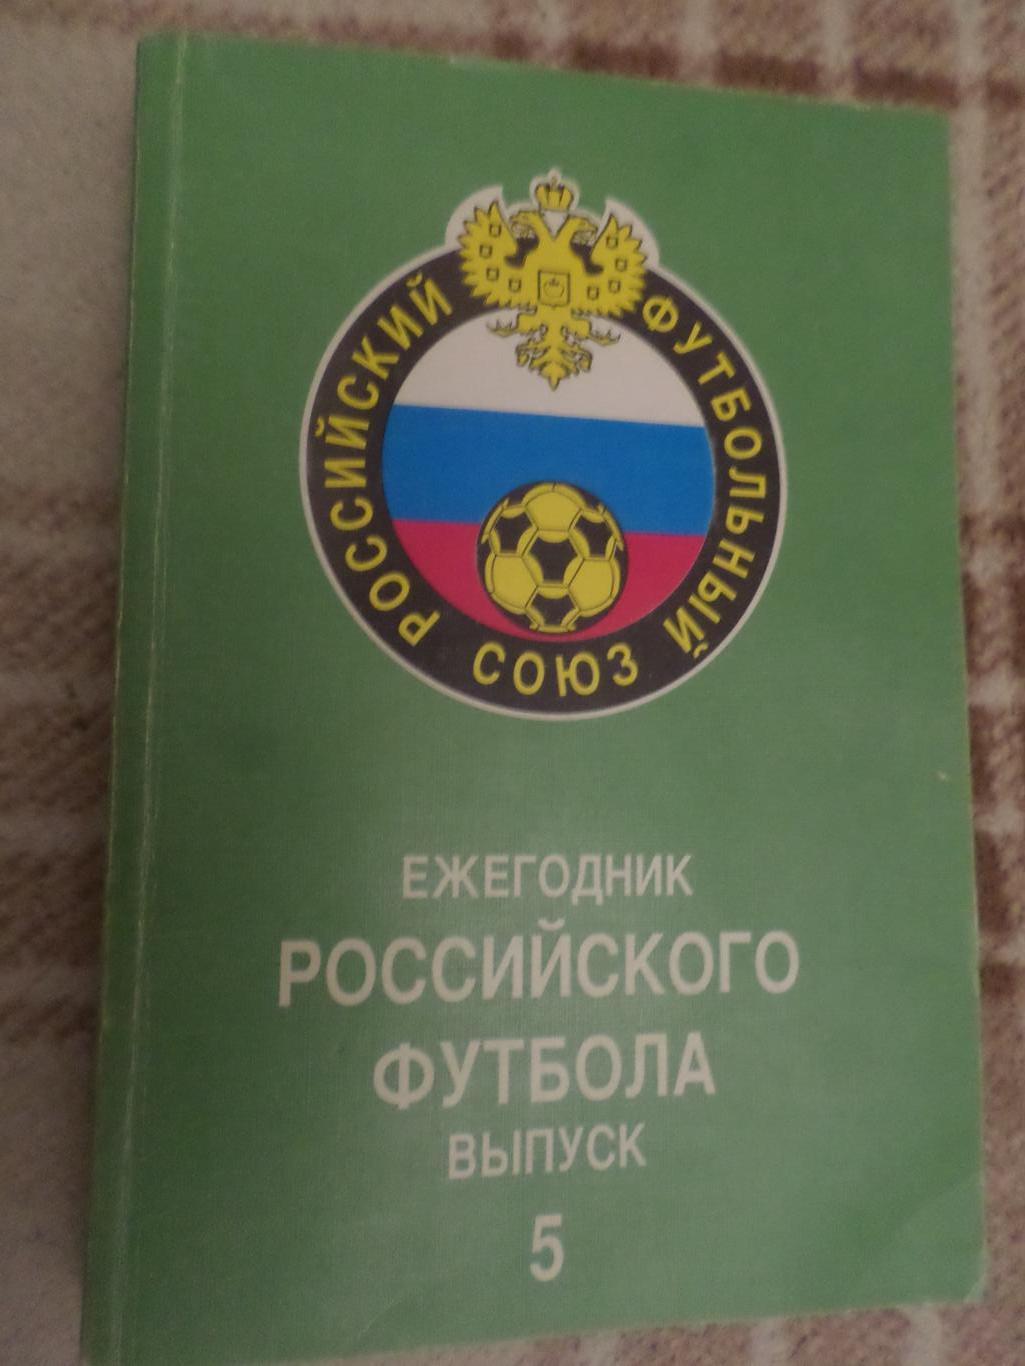 Ежегодник Российского футбола вып. 5 1996 г